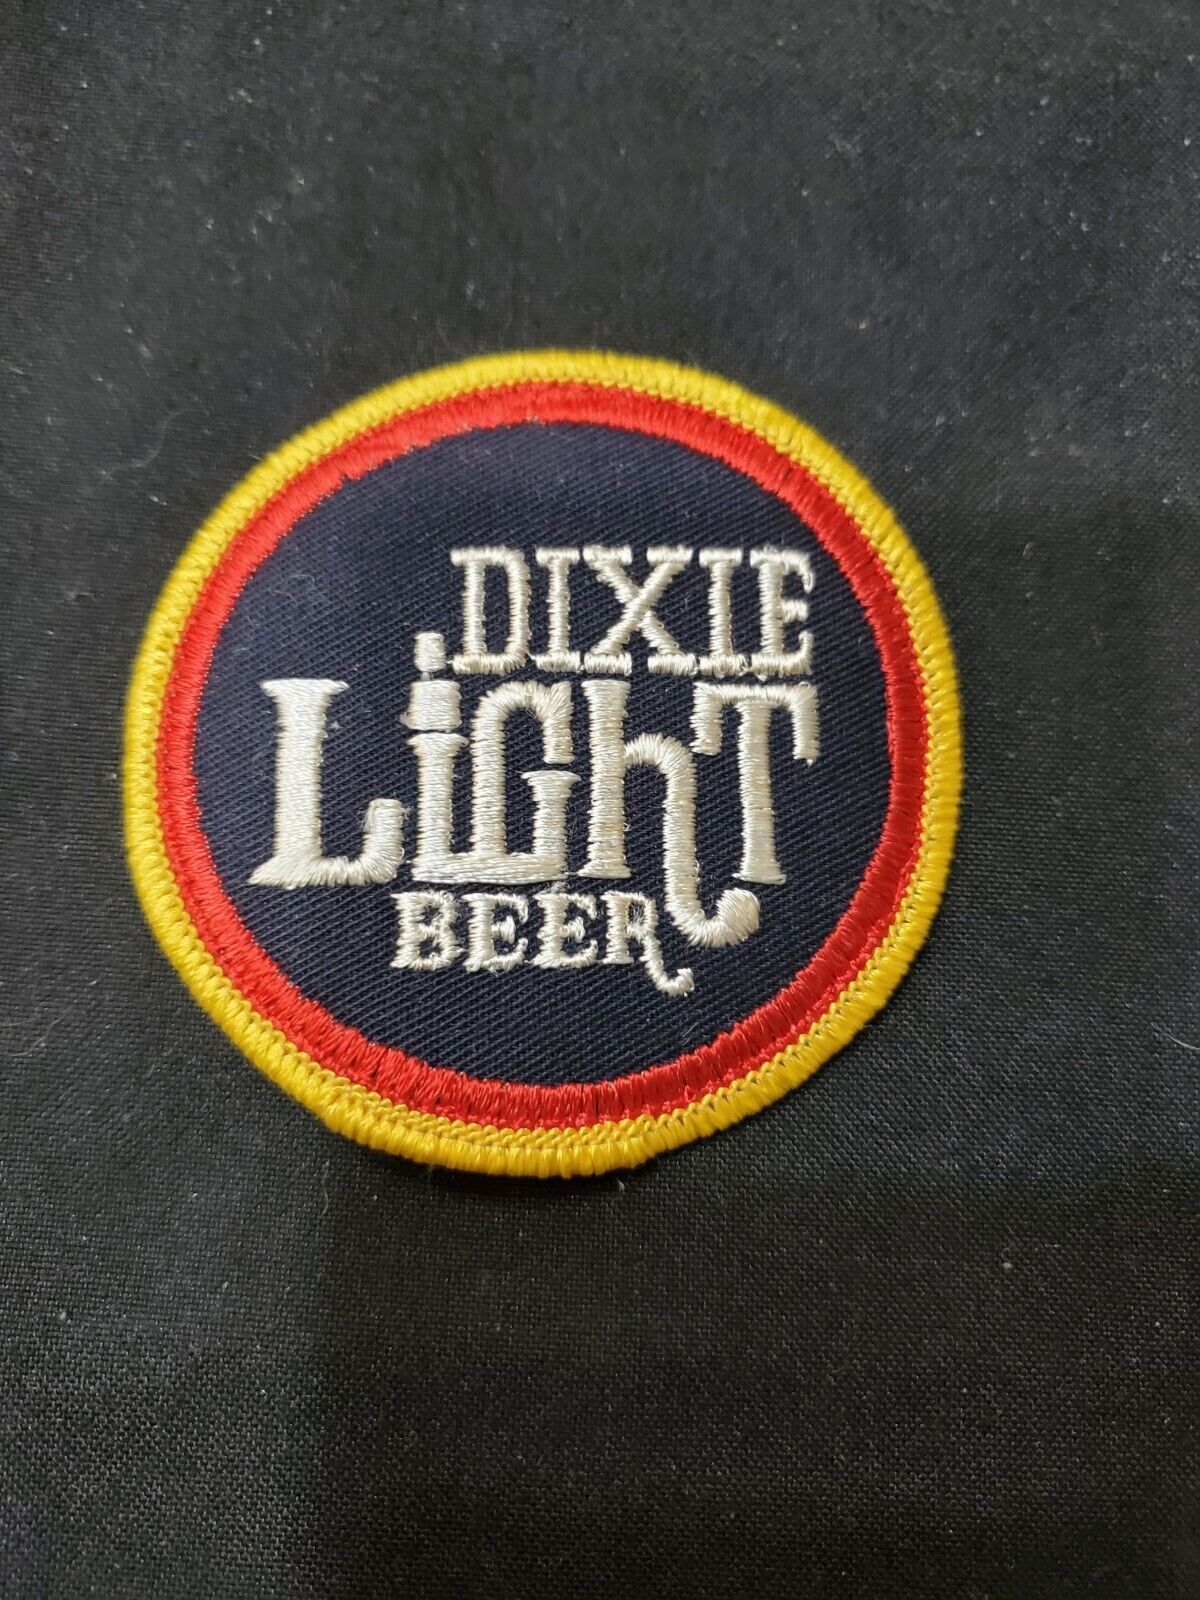 Vintage Dixie Beer Patch. Original Vintage